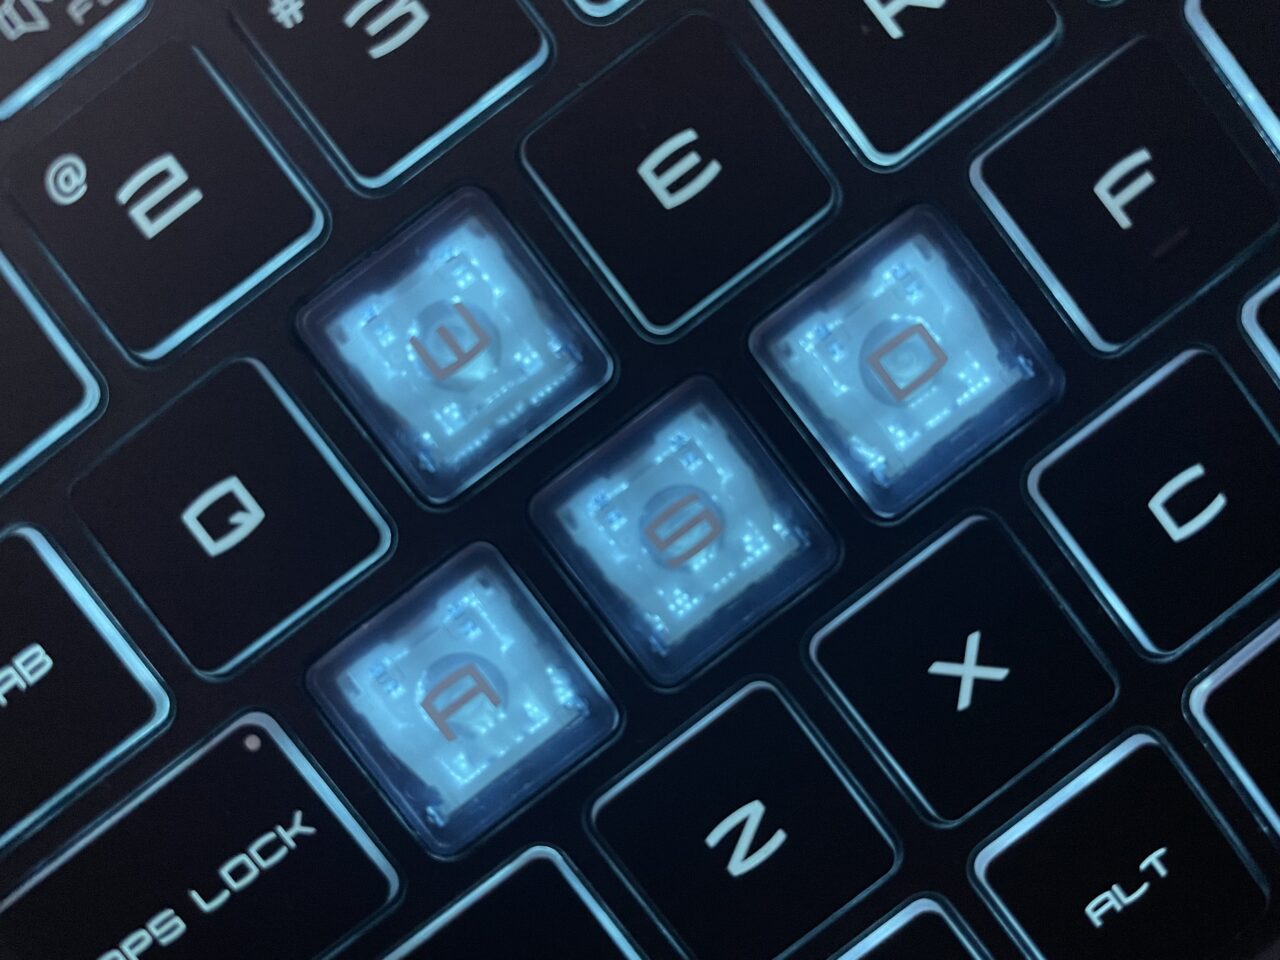 Klawiatura komputerowa z podświetlanymi klawiszami, w tym klawisze Caps Lock, A, S, D oraz częściowo widoczne klawisze z literami i symbolami wokół nich.